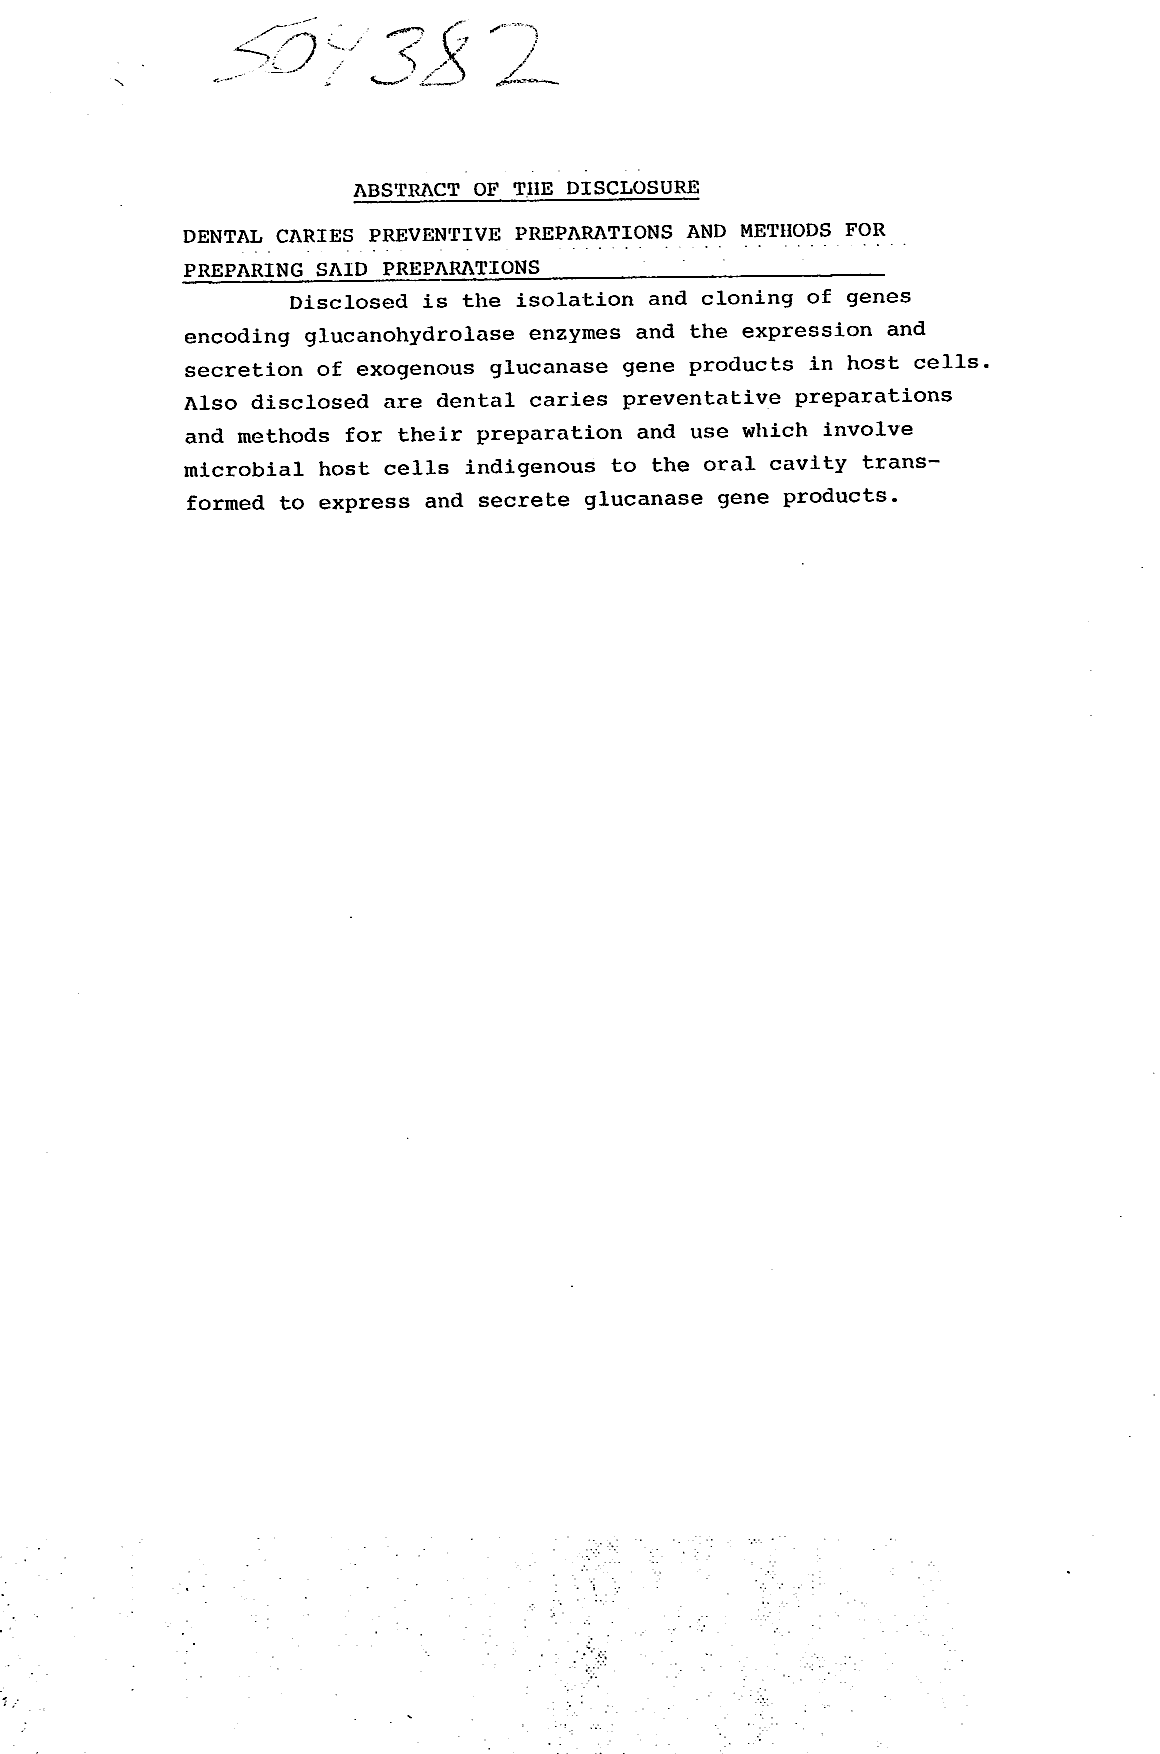 Document de brevet canadien 1321962. Abrégé 19940304. Image 1 de 1